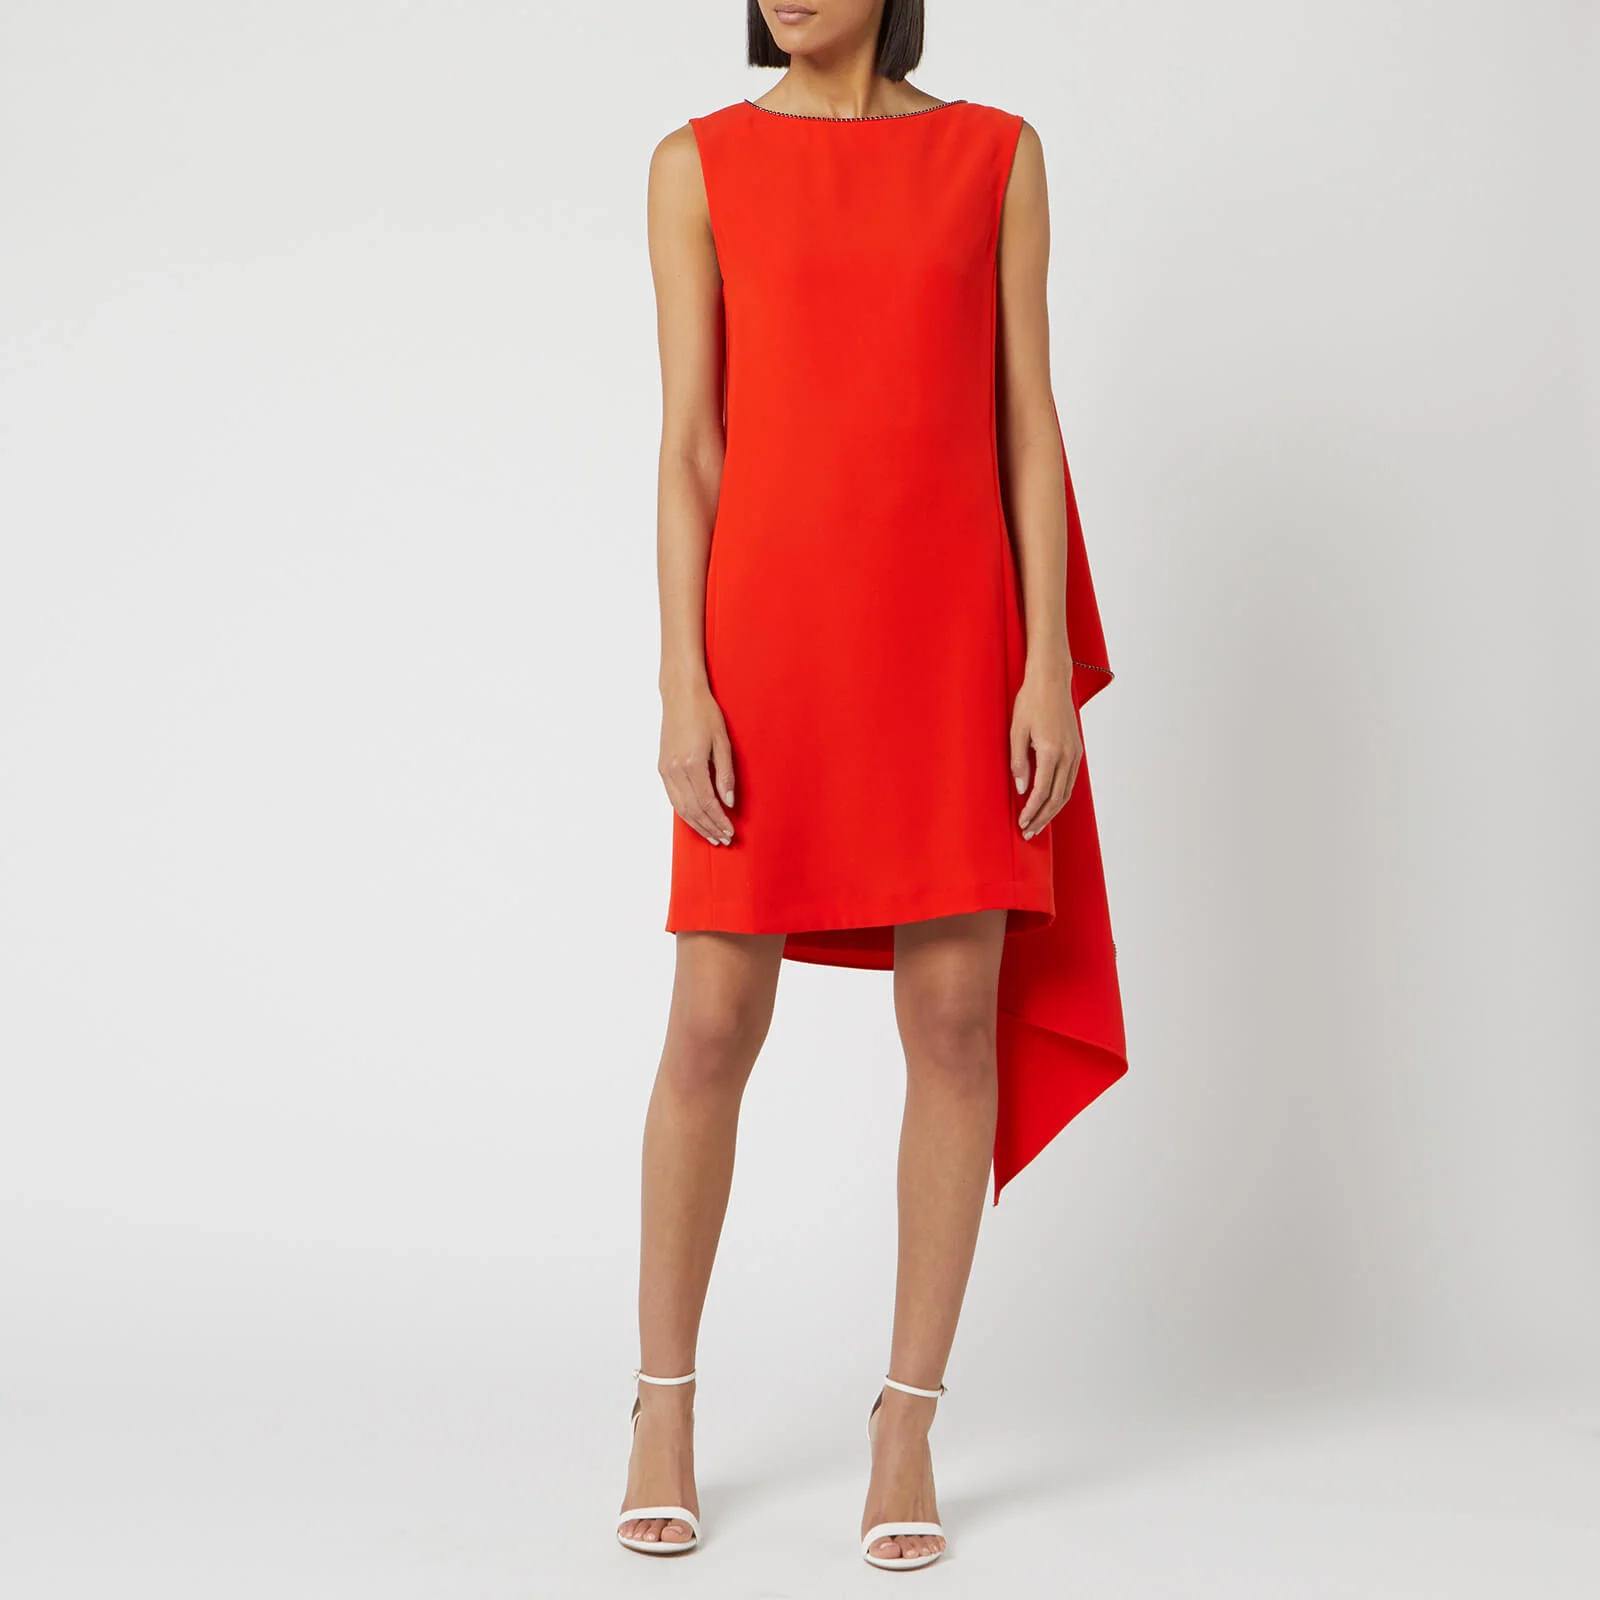 McQ Alexander McQueen Women's Sleeveless Cascade Dress - True Red Image 1